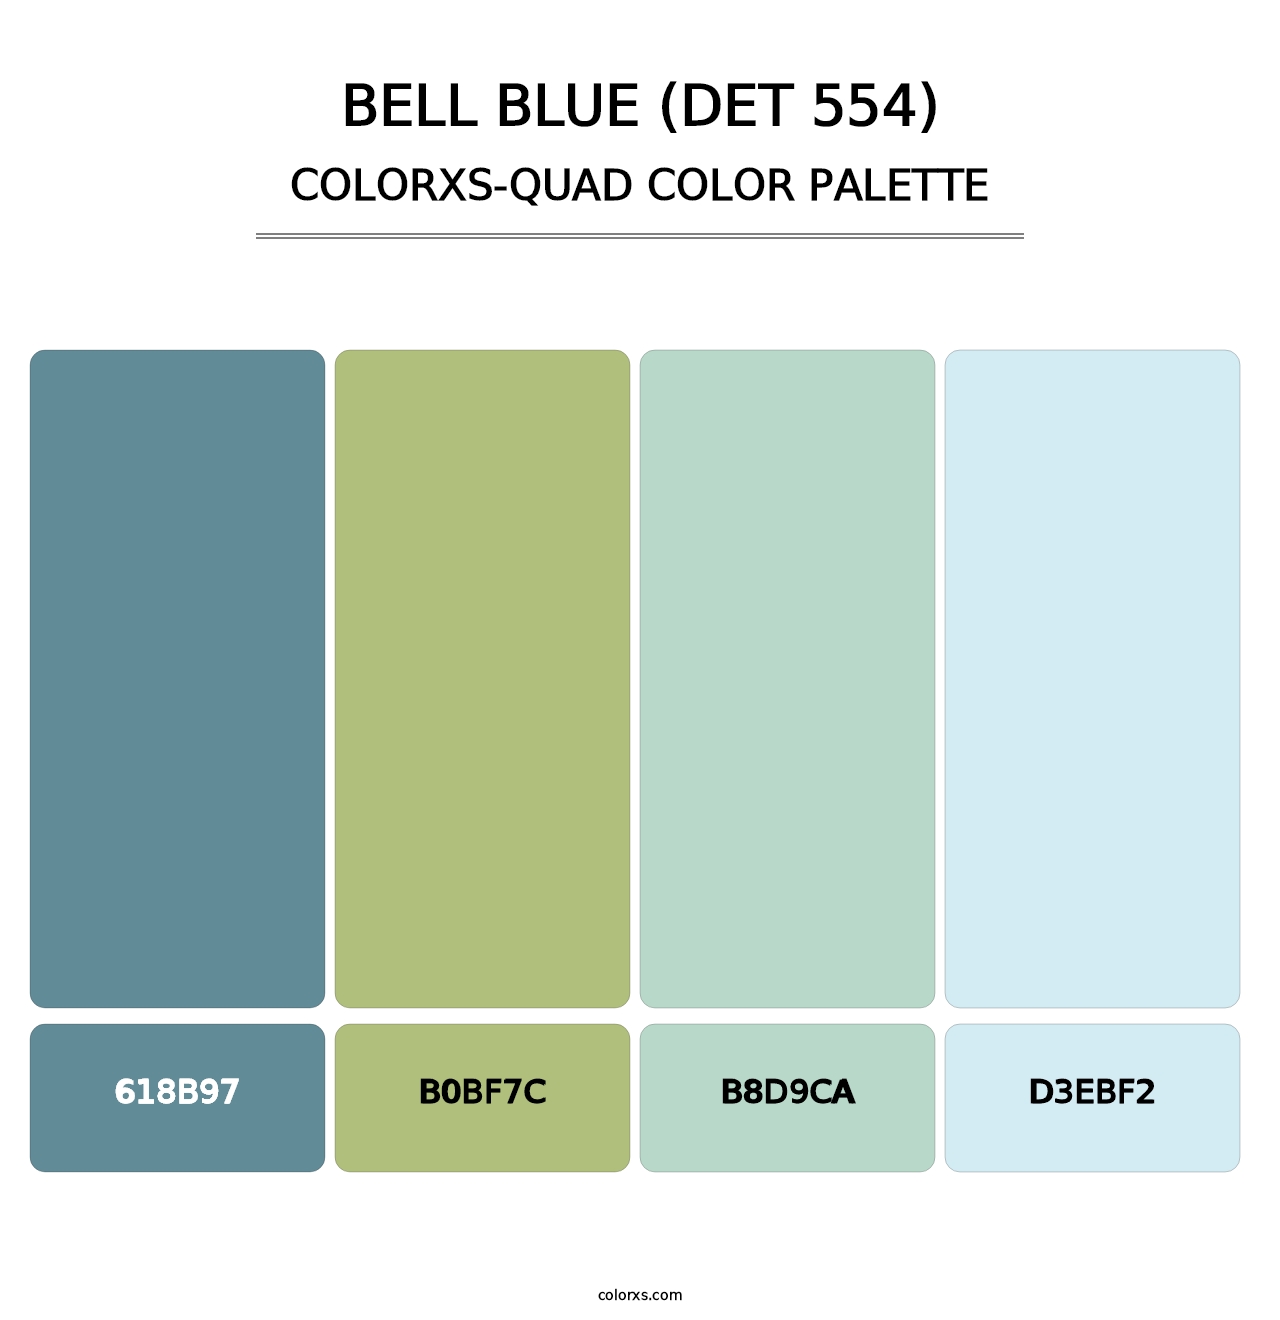 Bell Blue (DET 554) - Colorxs Quad Palette